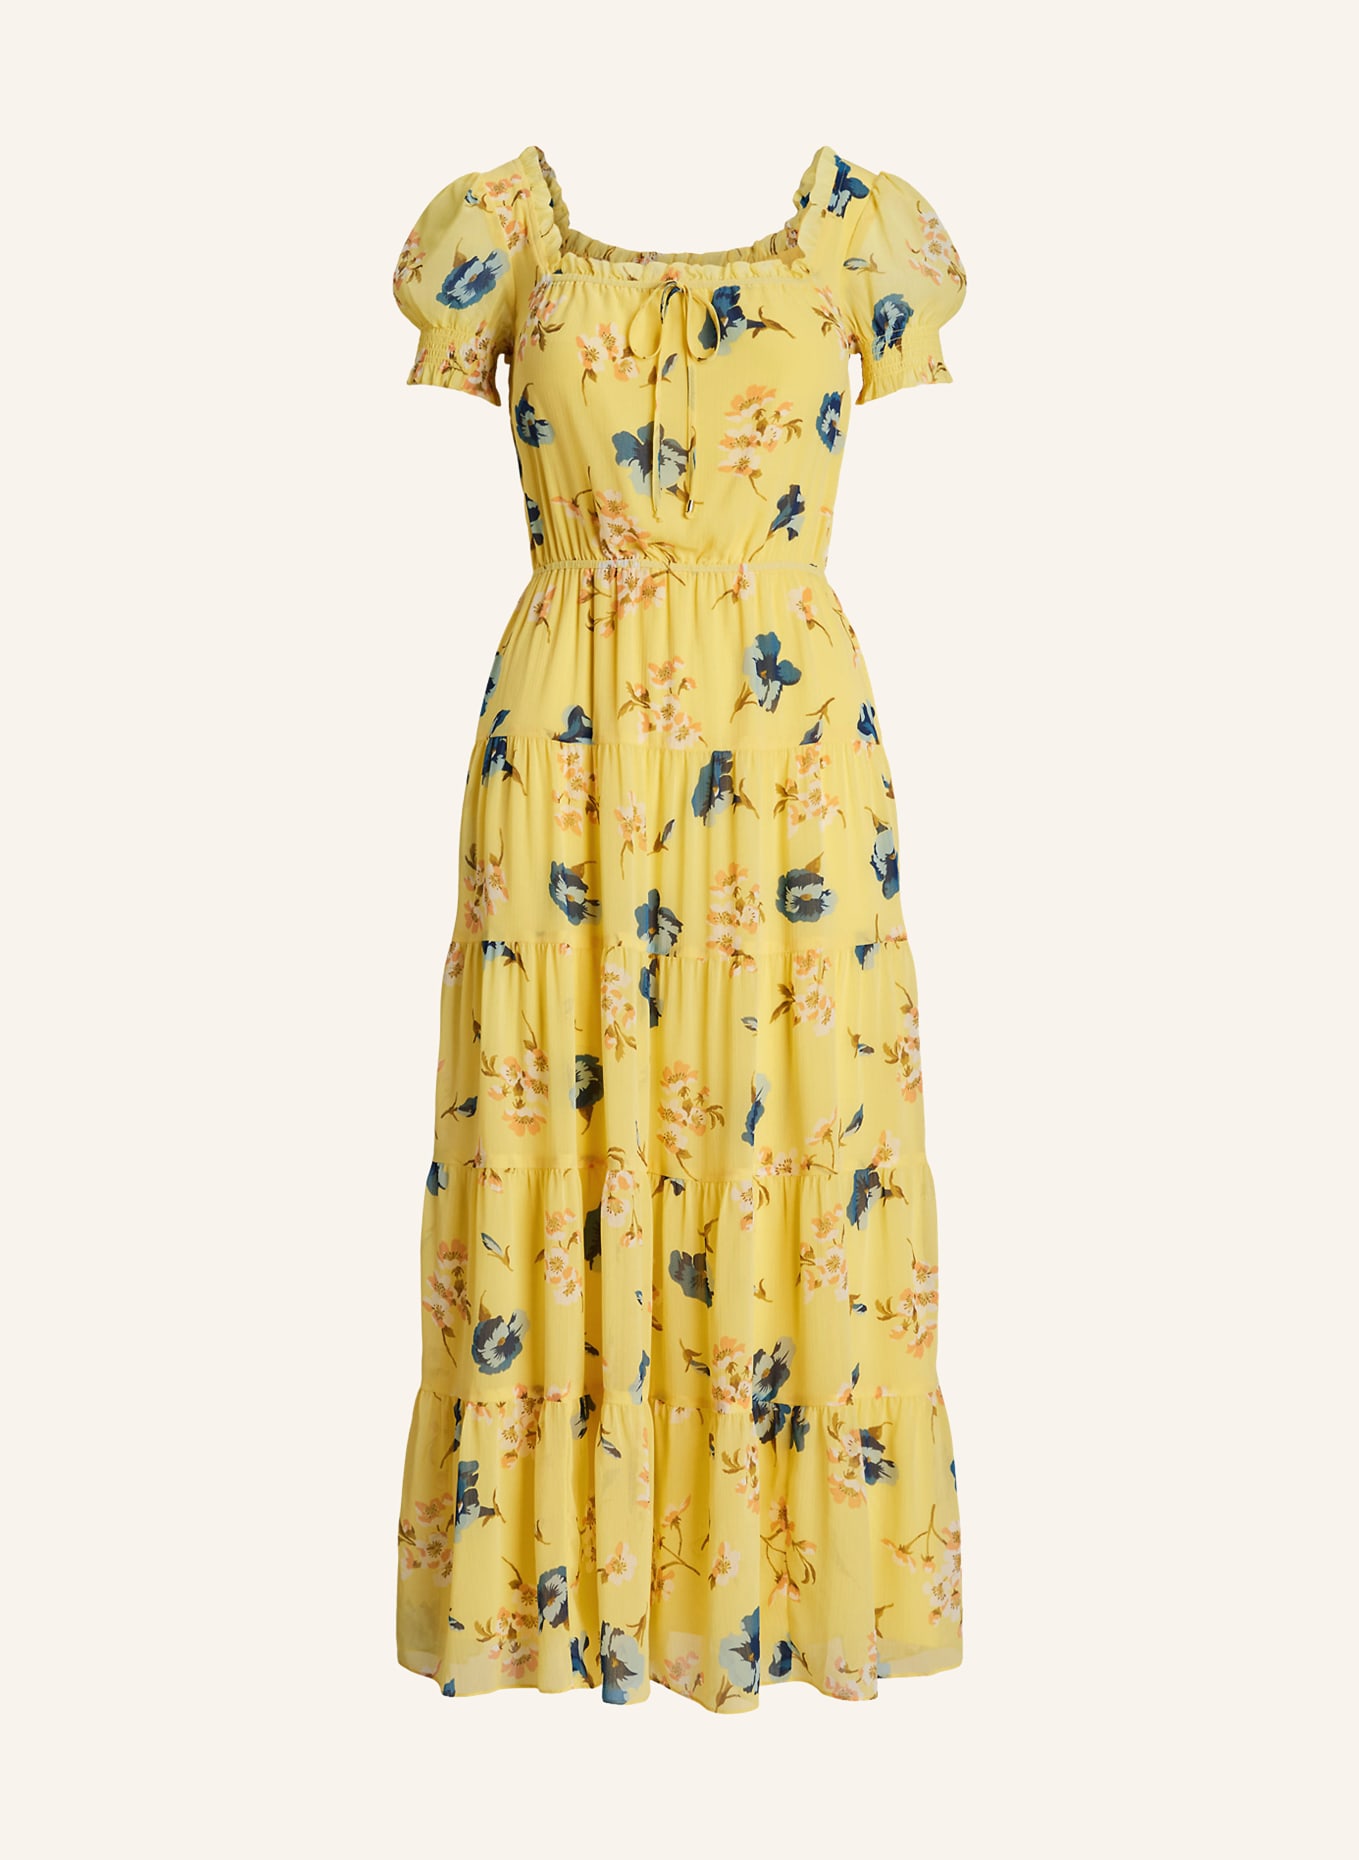 LAUREN RALPH LAUREN Dress with ruffles and frills, Color: YELLOW/ BLUE/ LIGHT ORANGE (Image 1)